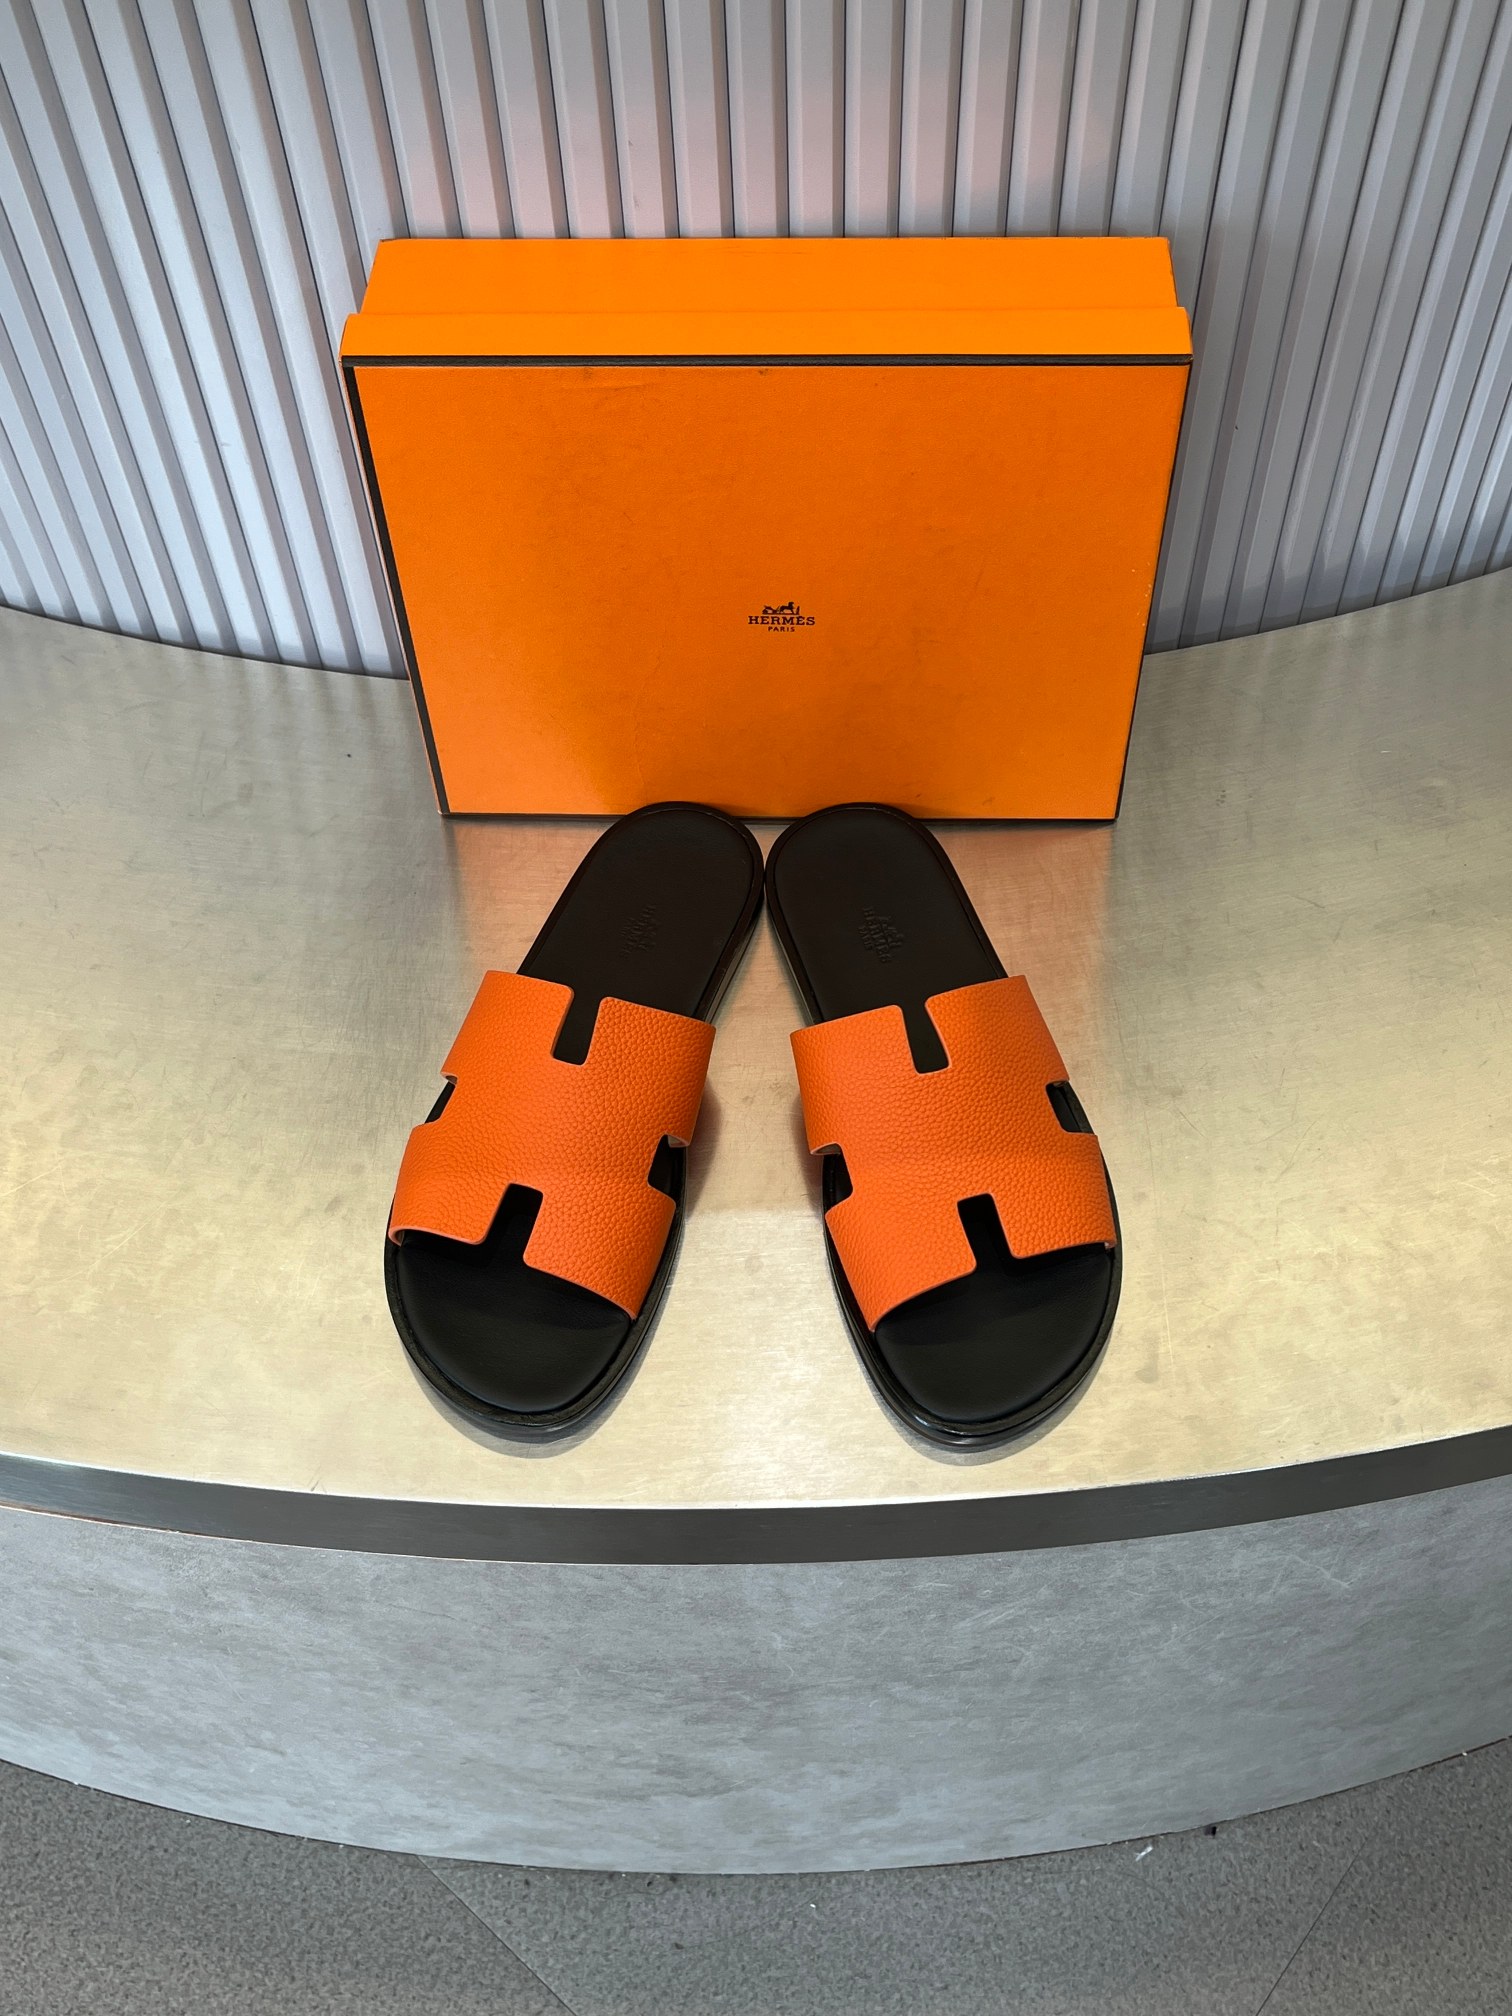 Hermes AAA+
 Scarpe Pantofole Replcia a buon mercato dalla Cina
 Uomini Cuoio genuino